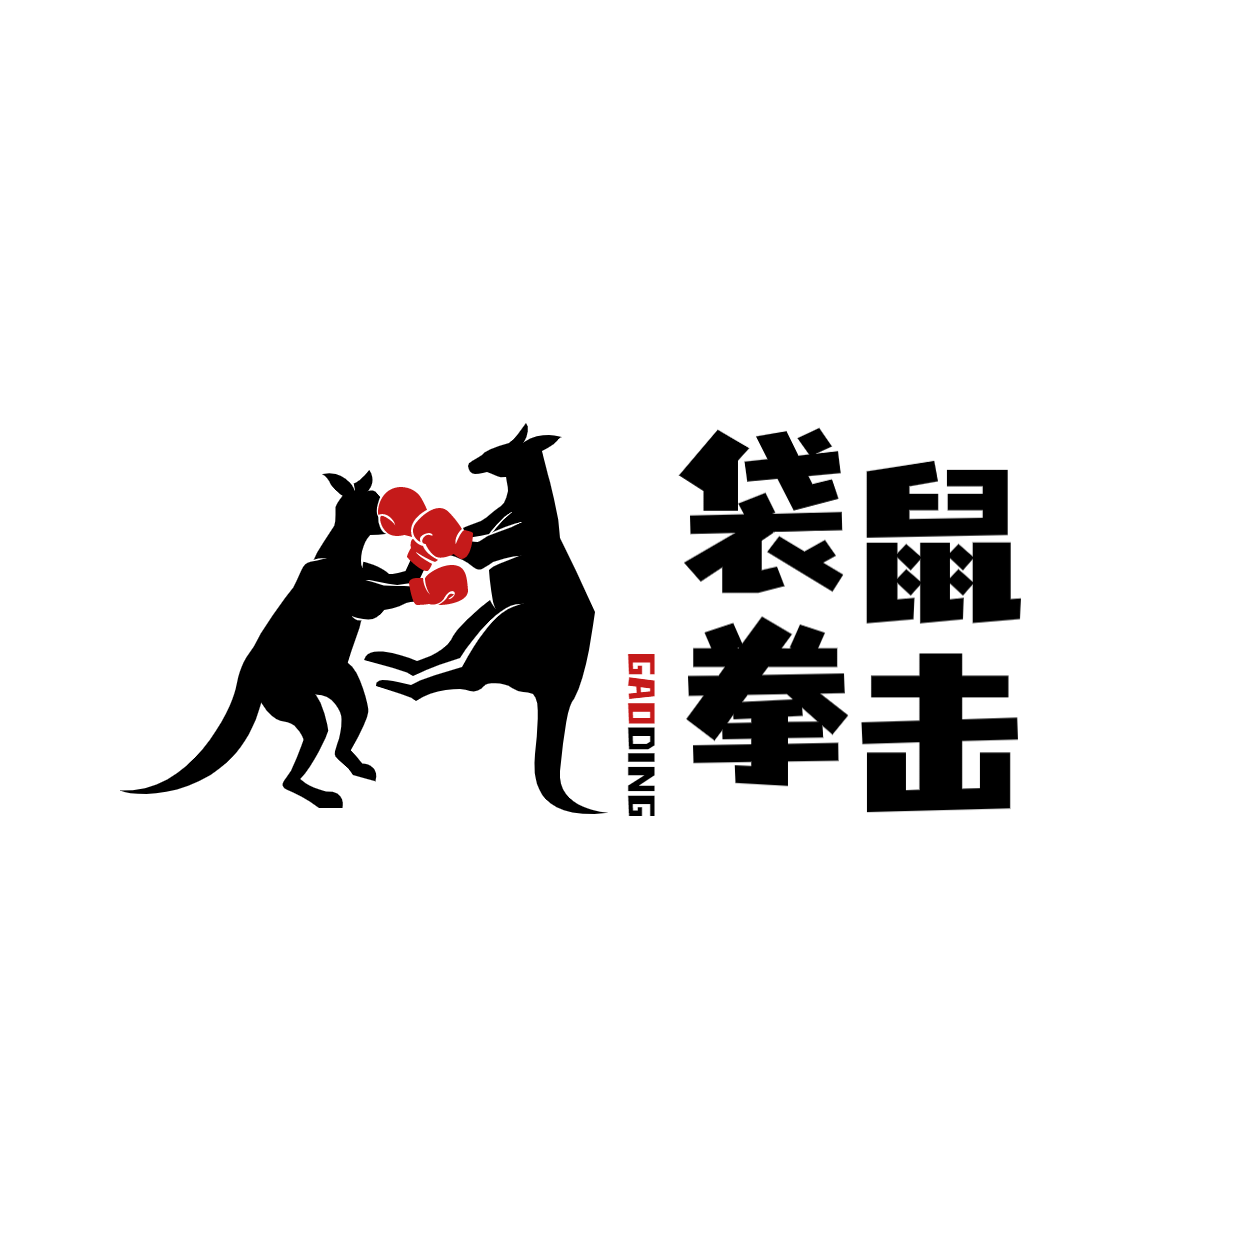 教育培训机构拳击店标logo预览效果